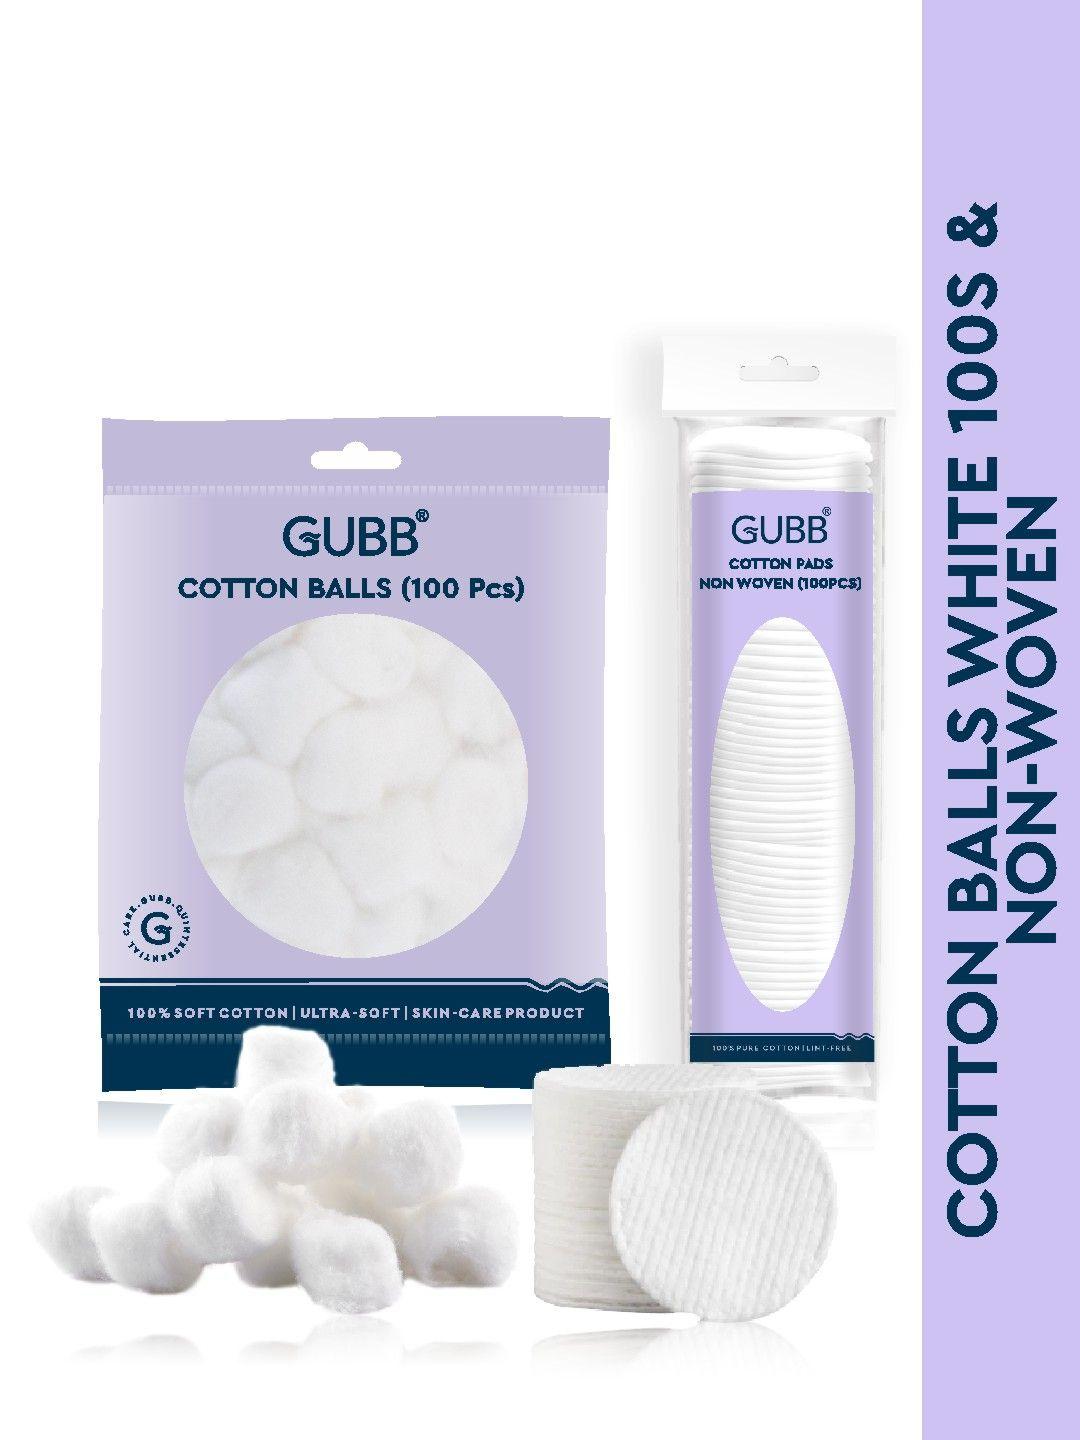 gubb set of cotton balls & non woven cotton pads for makeup remover - 100 pcs each